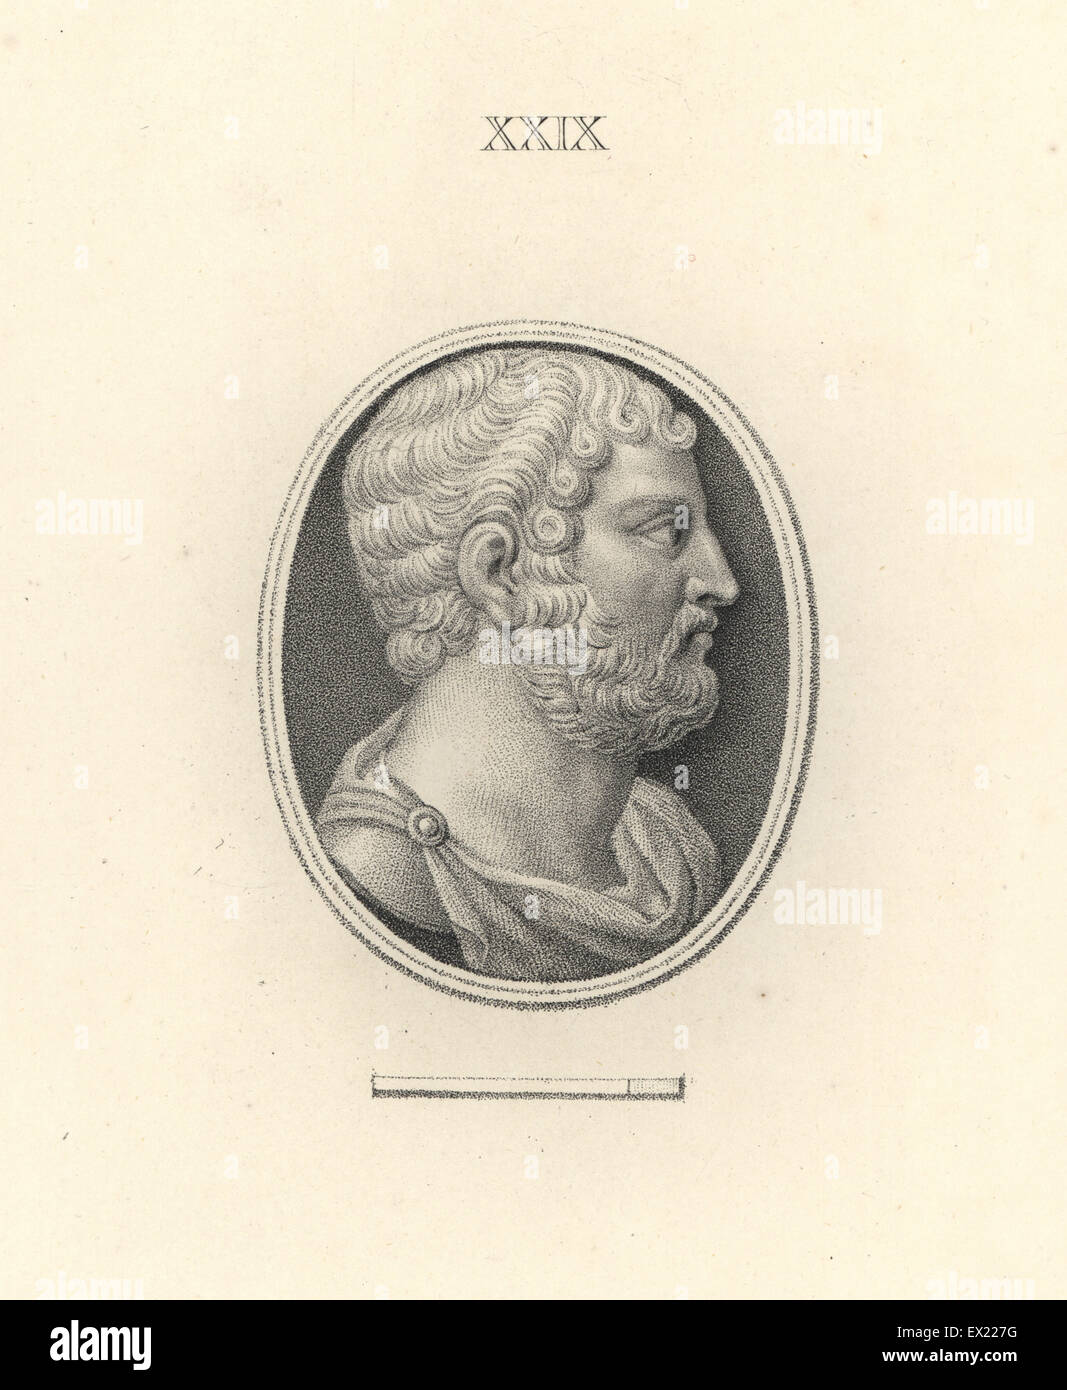 L'empereur romain Hadrien. La gravure sur cuivre par Francesco Bartolozzi à partir de 108 plaques de pierres antiques, 1860. Les pierres étaient de la collection du duc de Marlborough. Banque D'Images